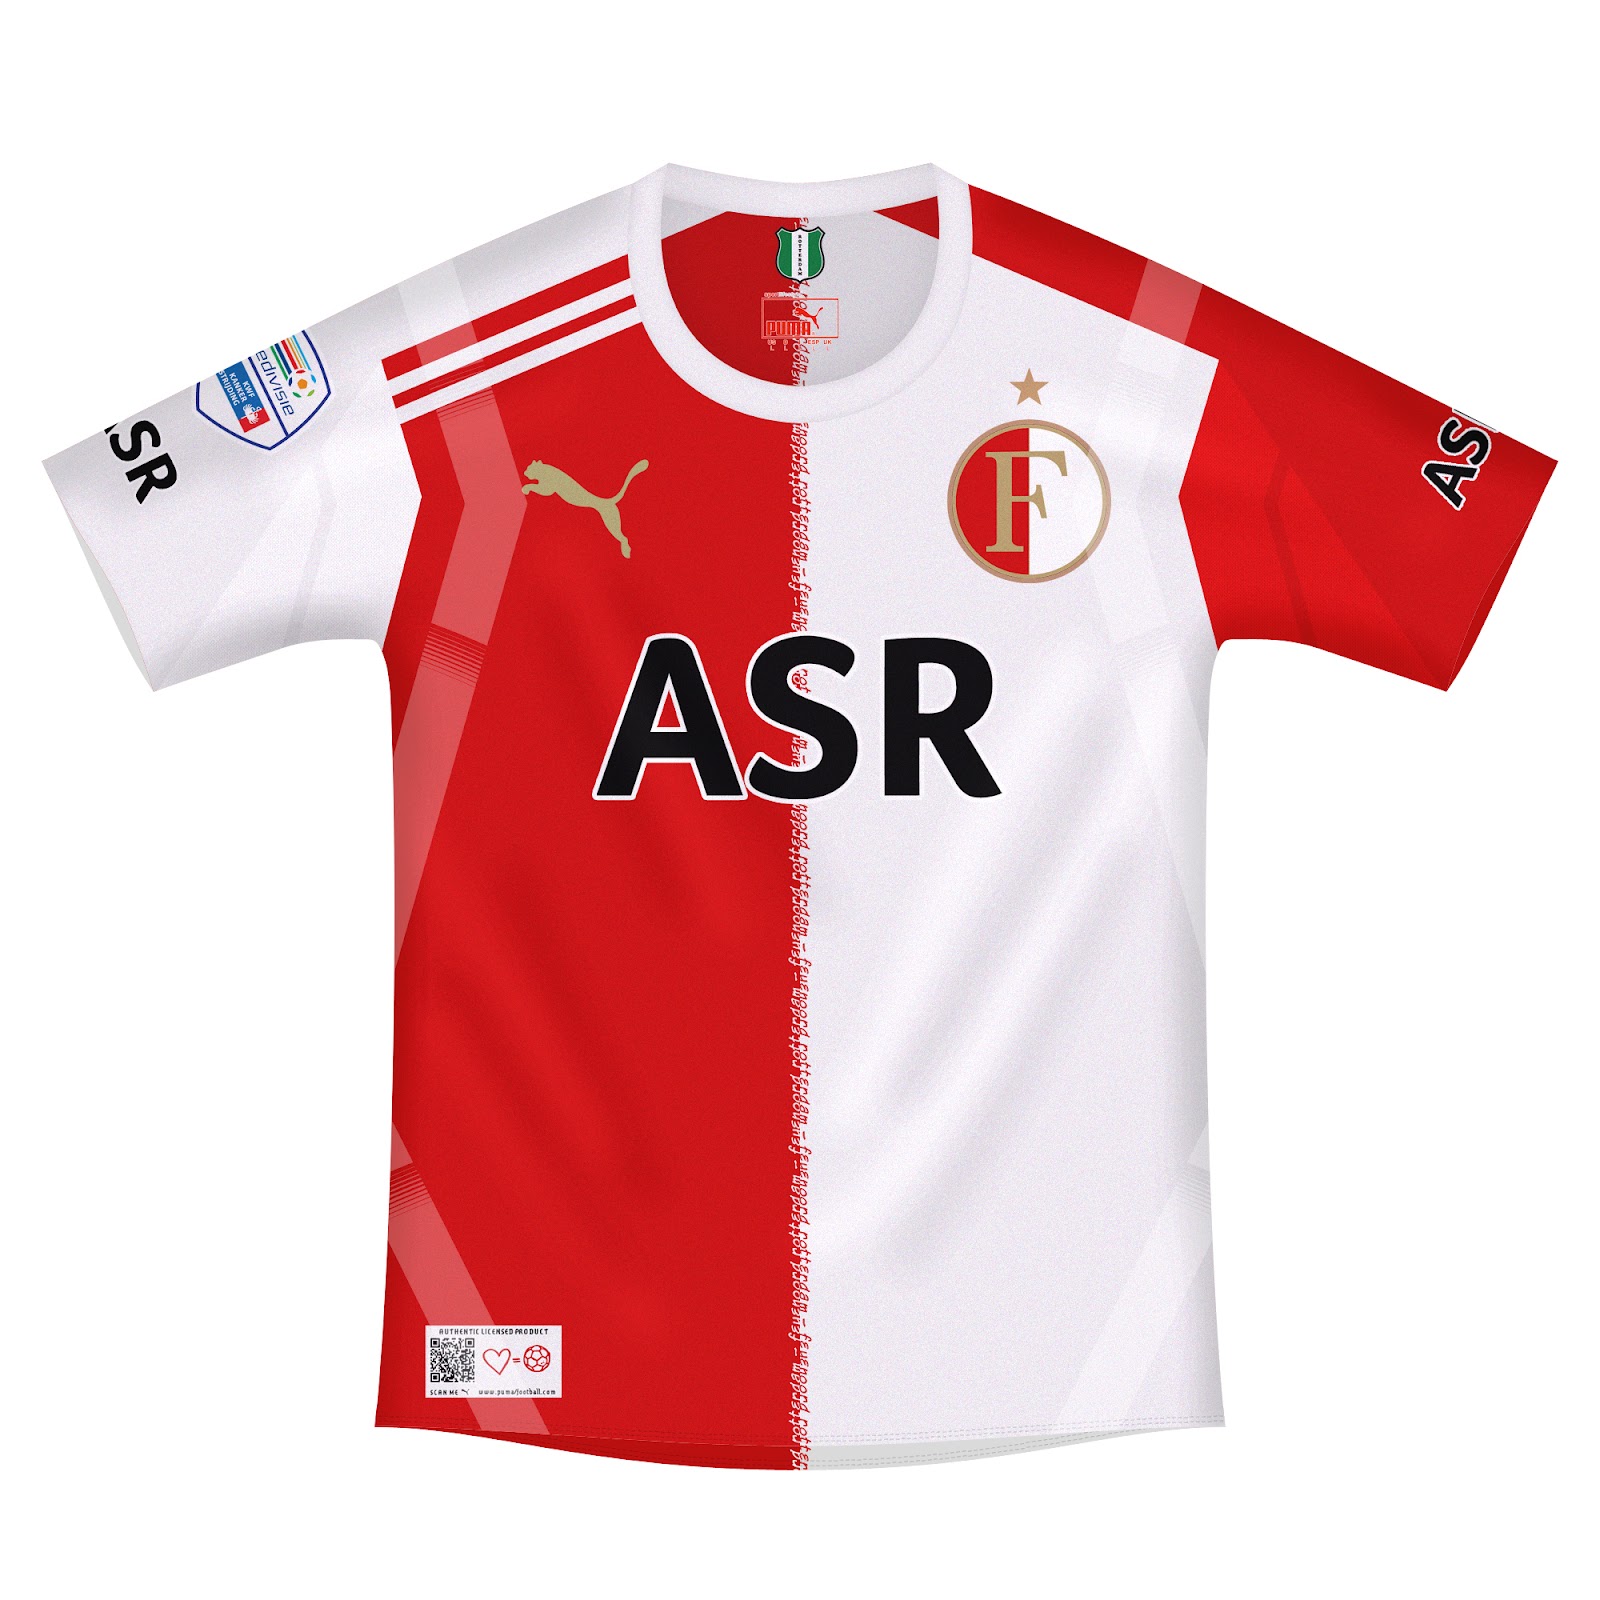 Download Kits Trikot Camisas Maillot: Feyenoord Rotterdam